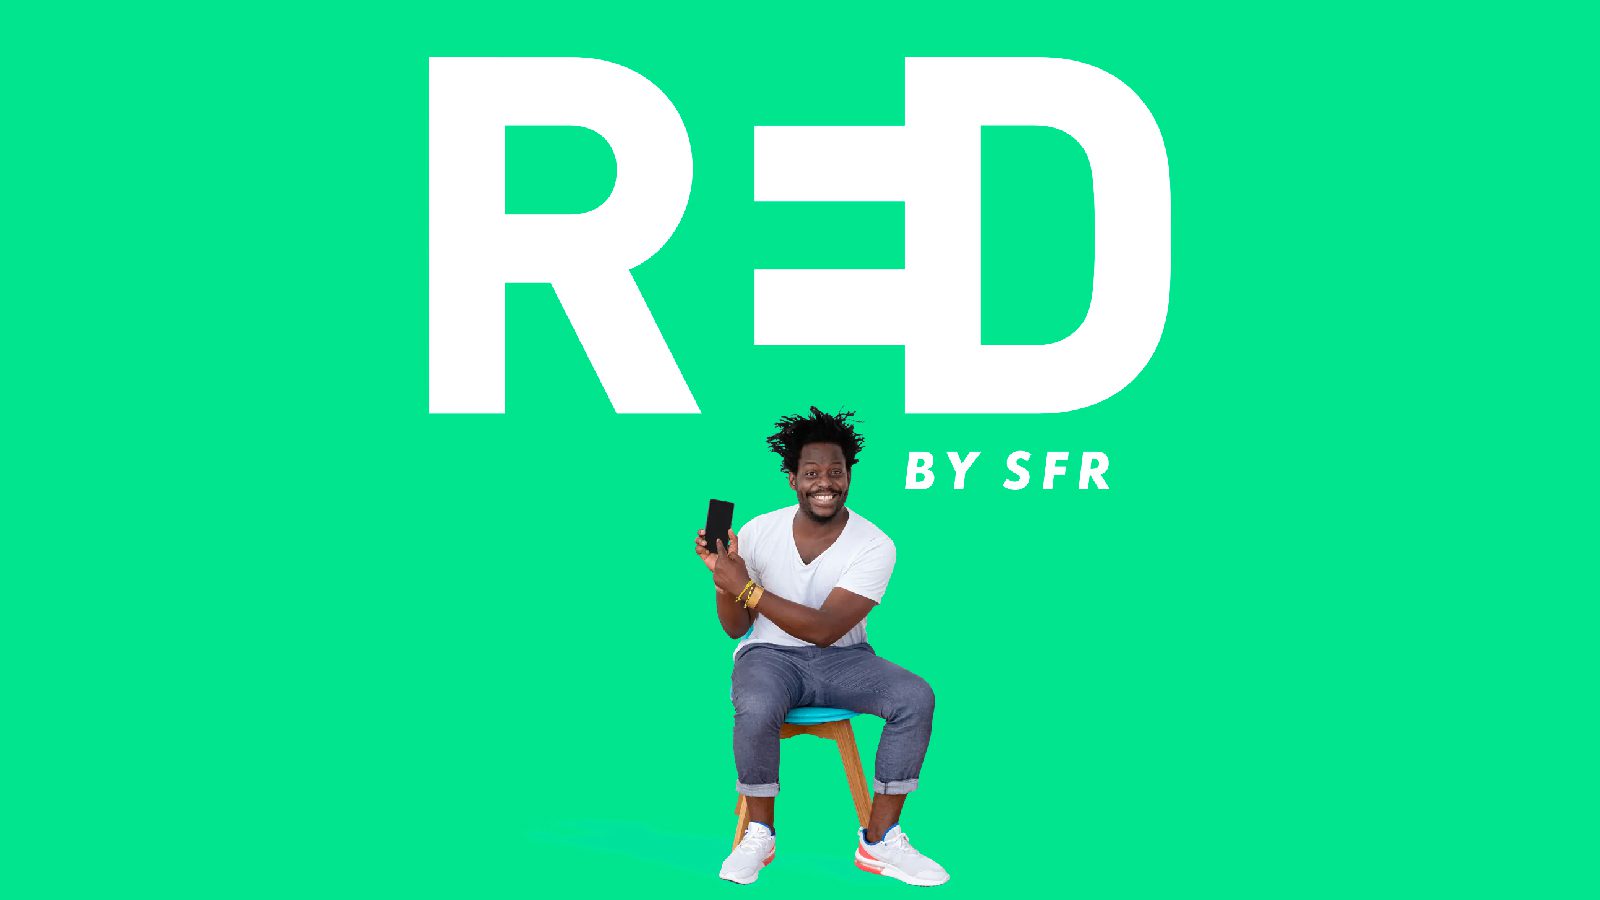 RED by SFR höjde än en gång sitt pris med 3 euro, men detta går att fixa!